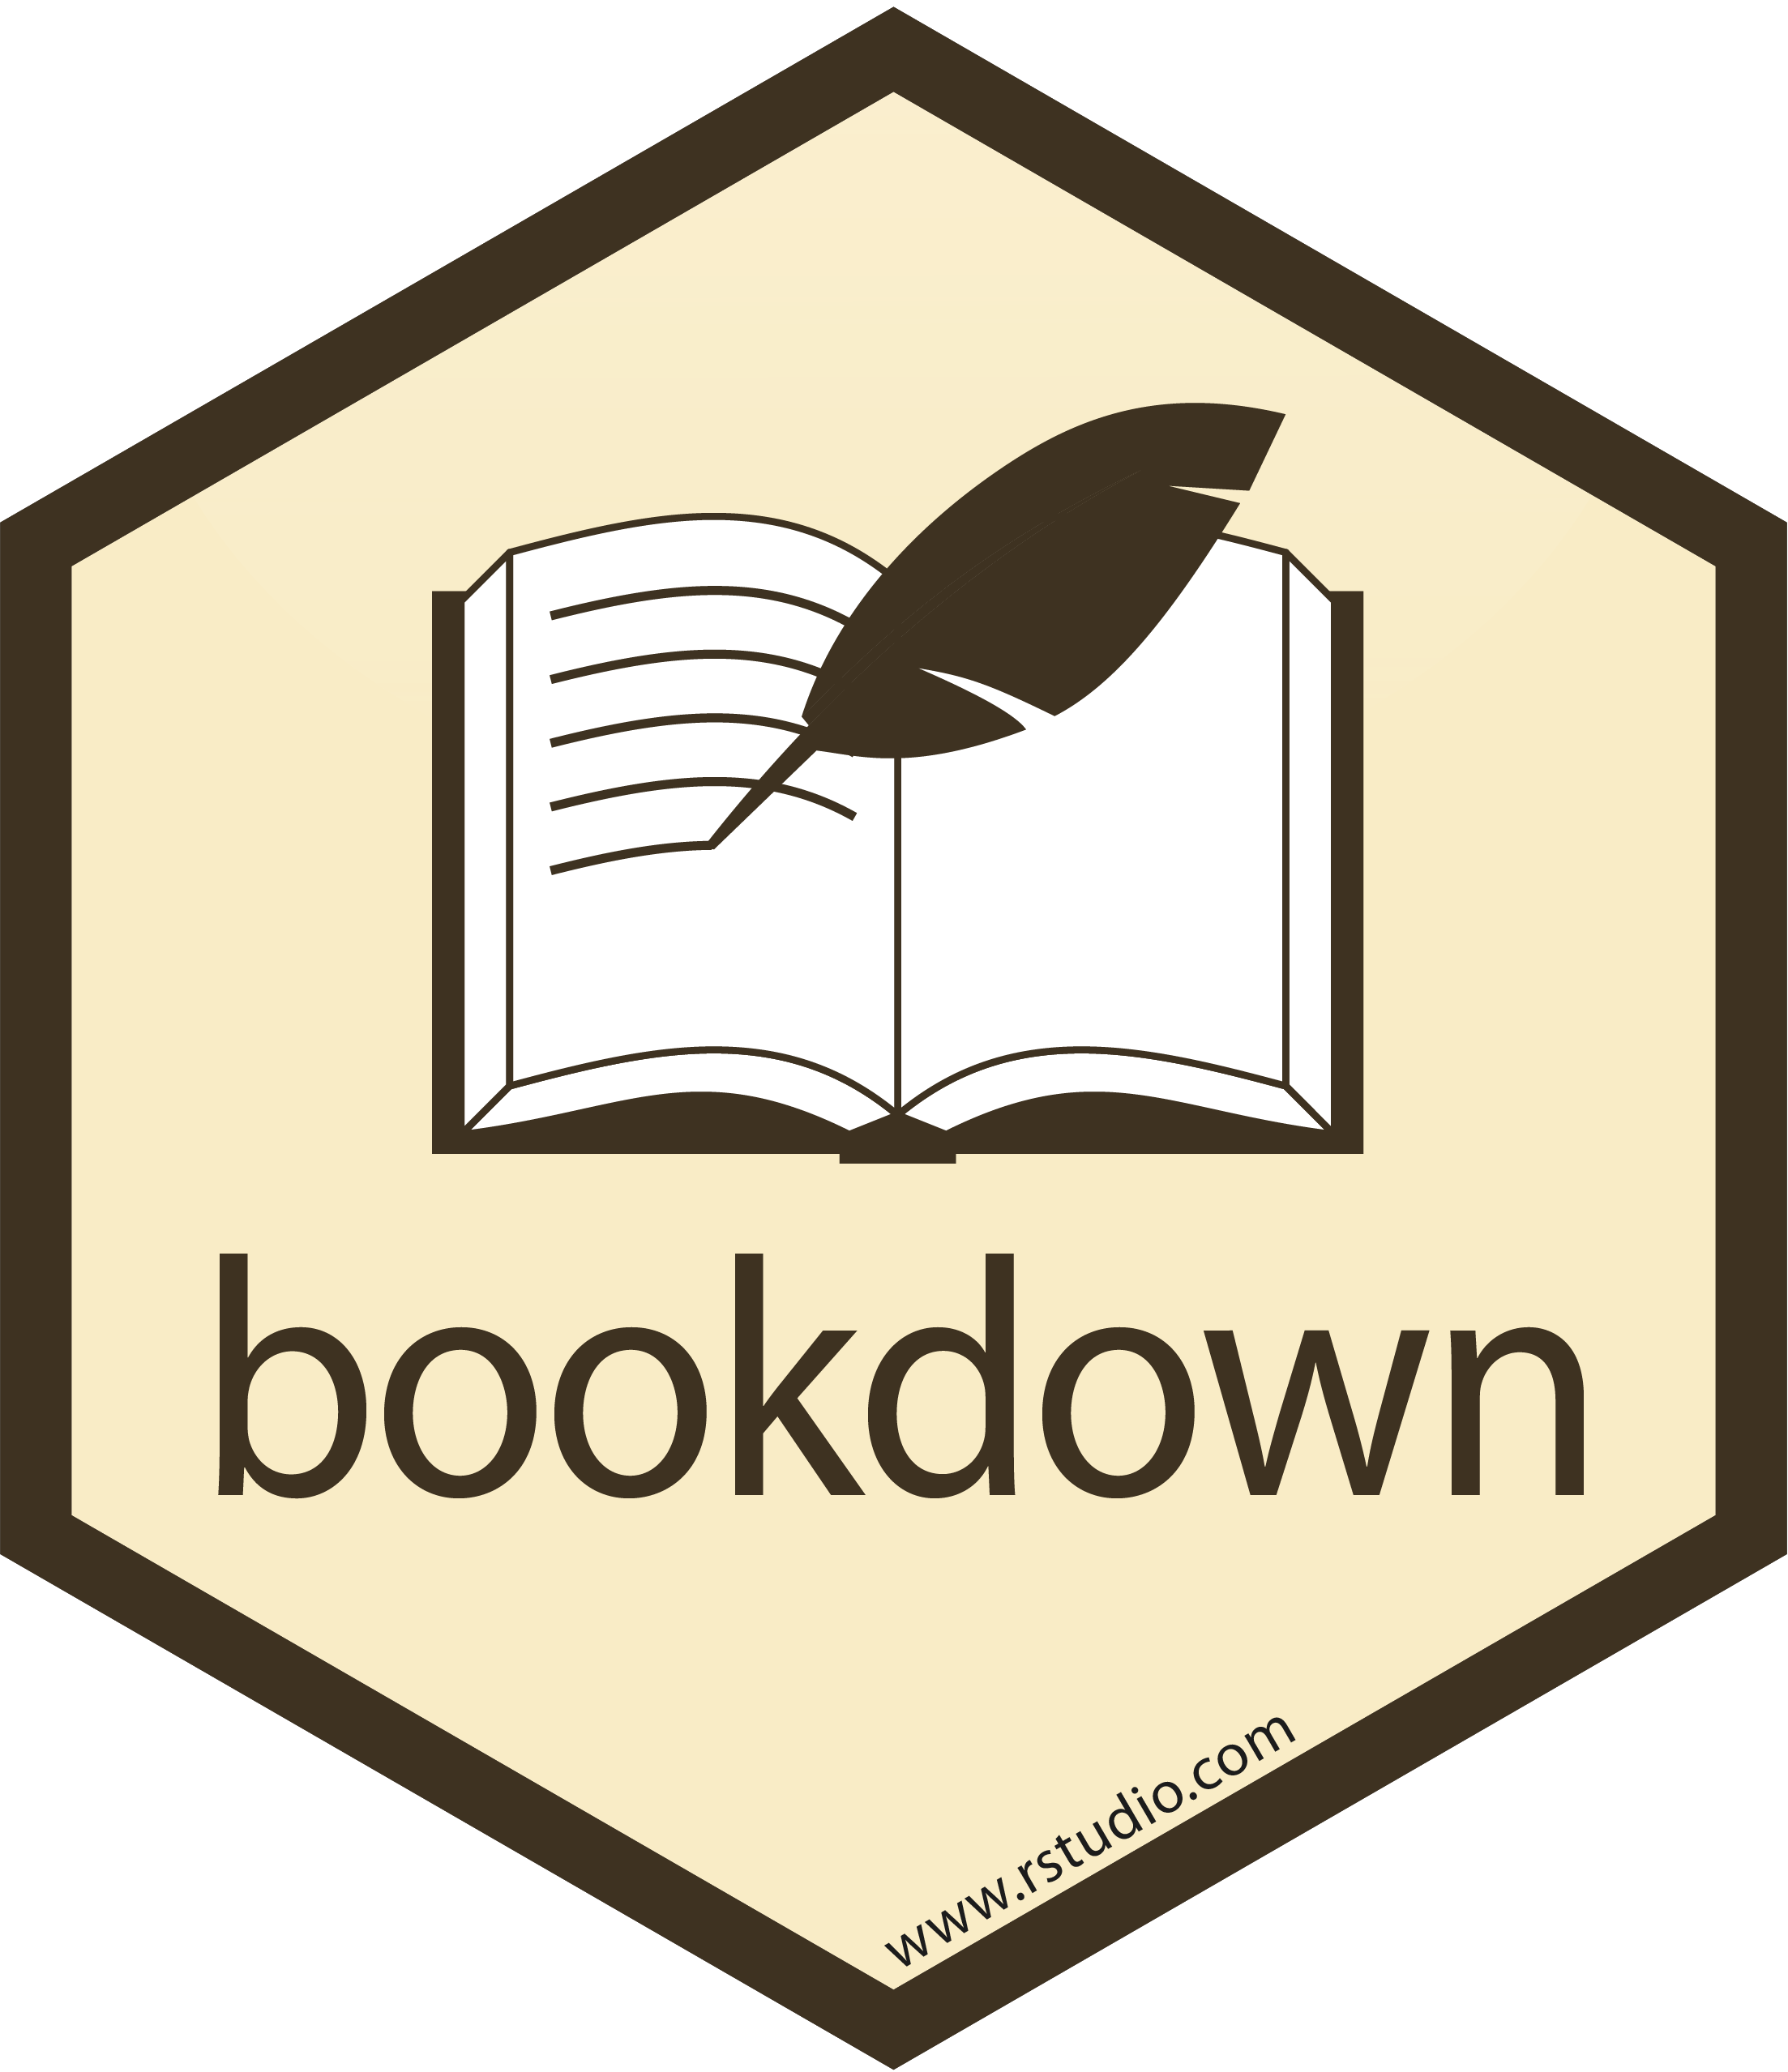 bookdown sticker